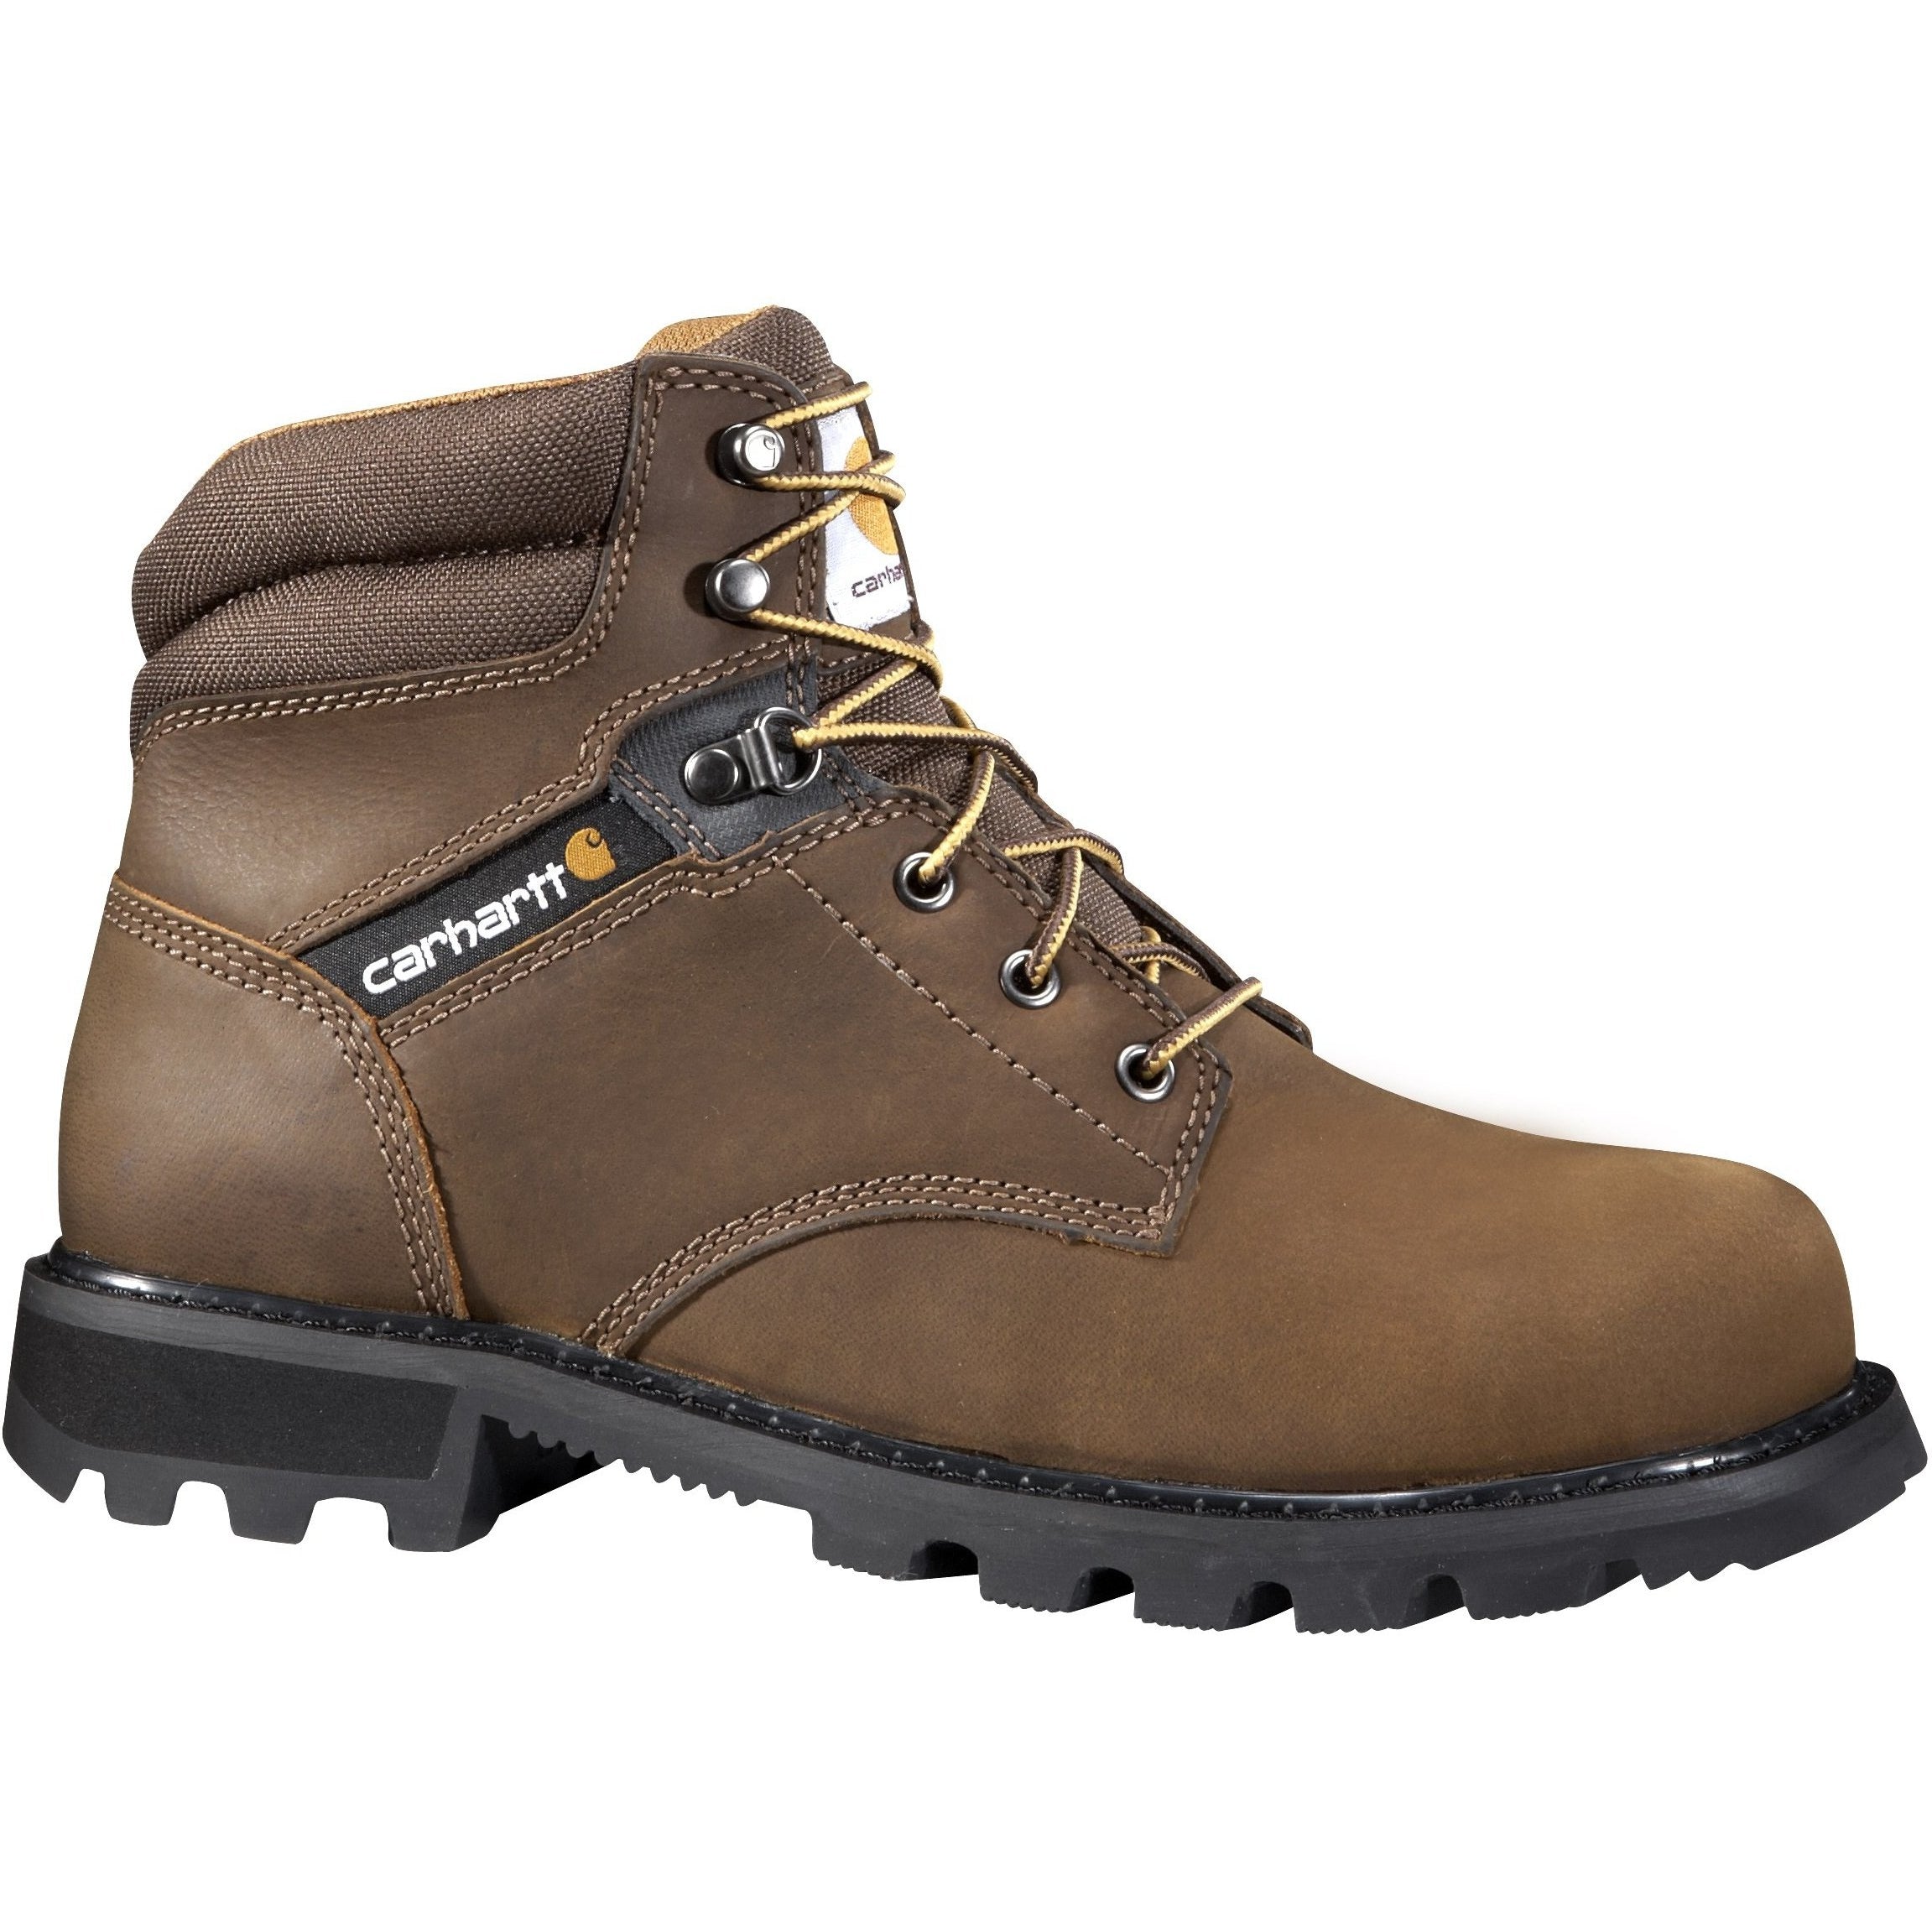 Carhartt Men's 6" Steel Toe Work Boot - Brown - CMW6274 8 / Medium / Brown - Overlook Boots